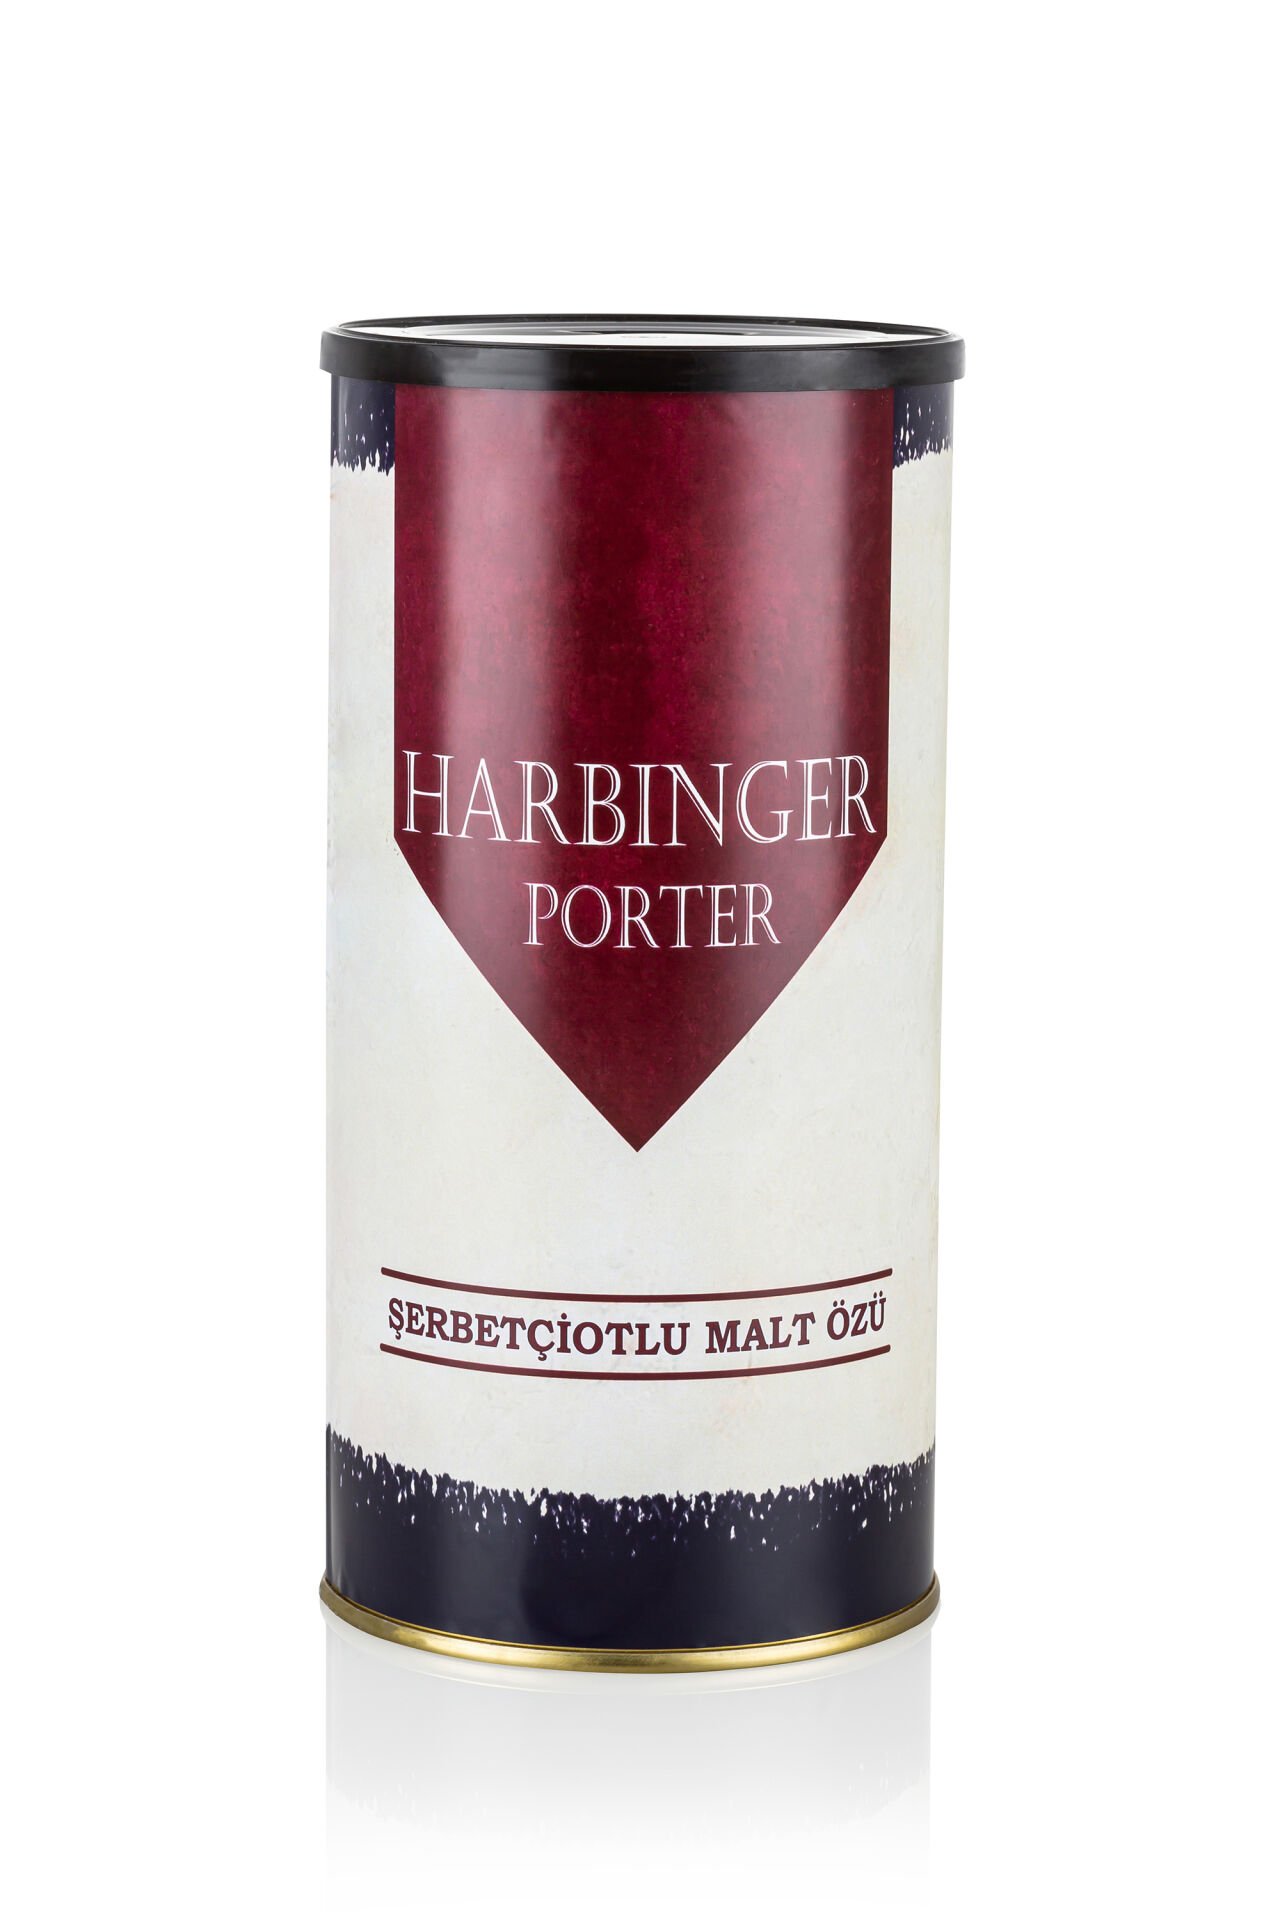 Harbinger - Porter - Şerbetçiotlu Malt Özü